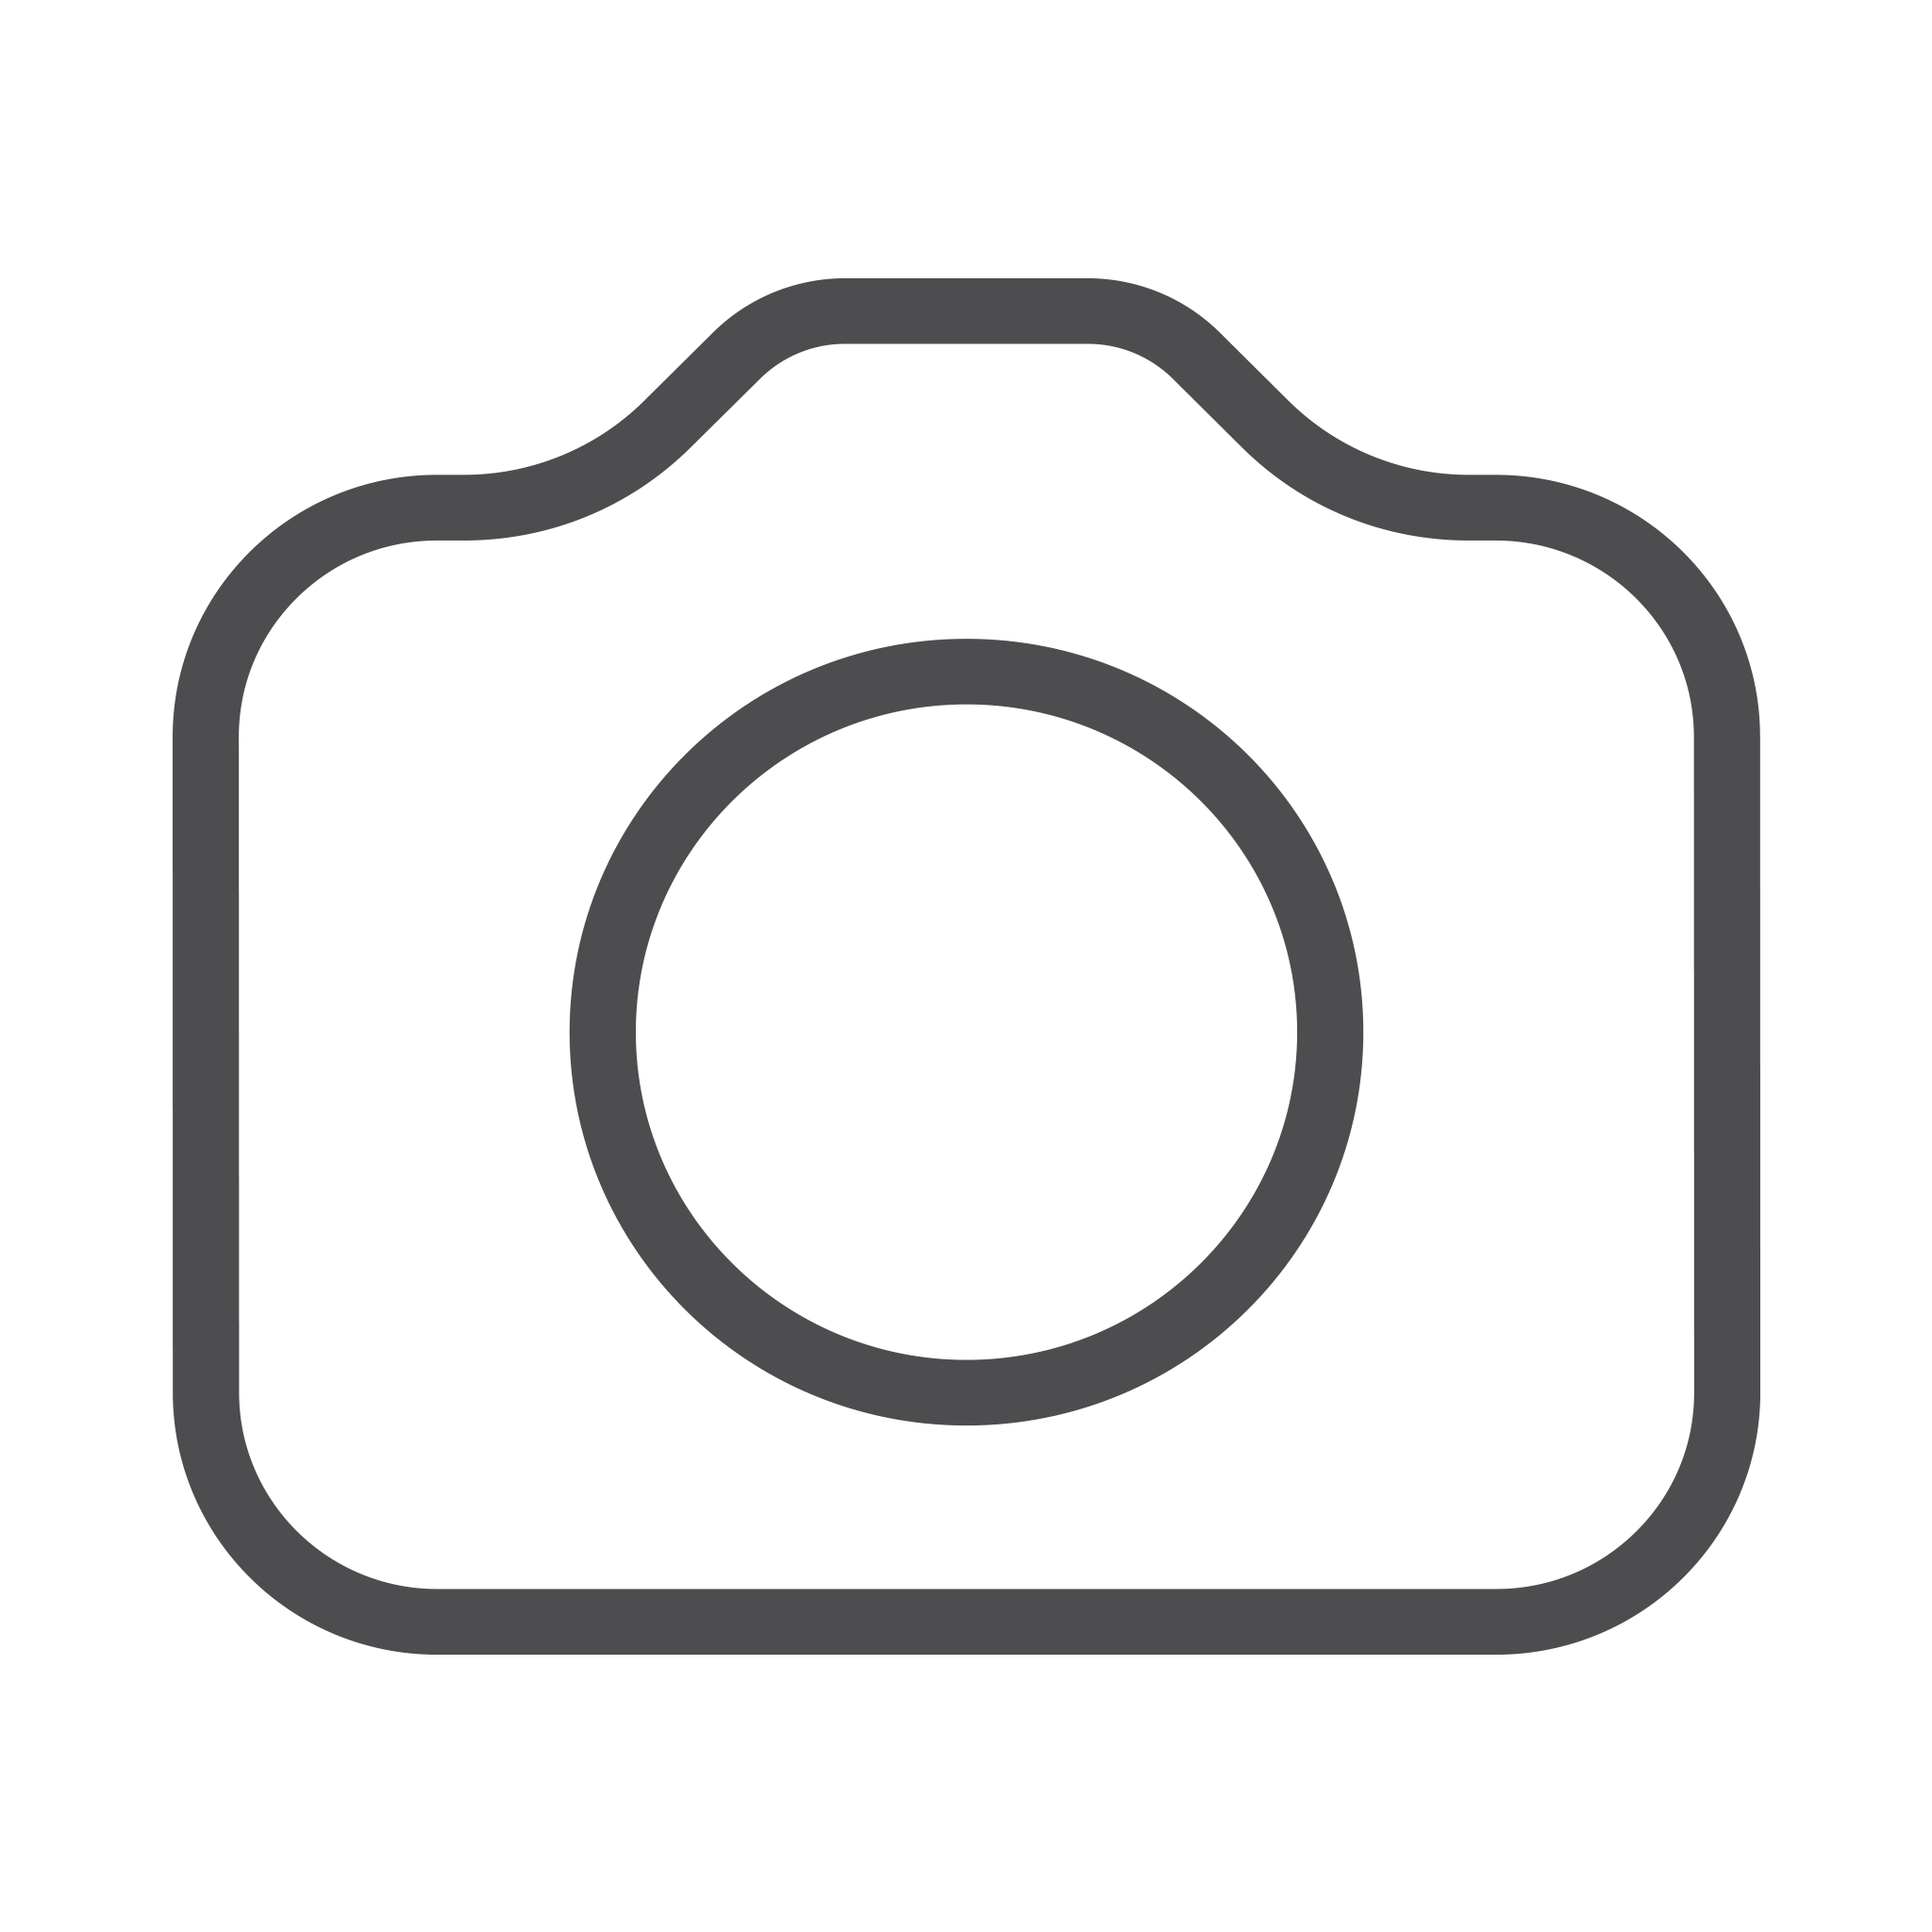 Icono de cámara de fotografía PNG photo